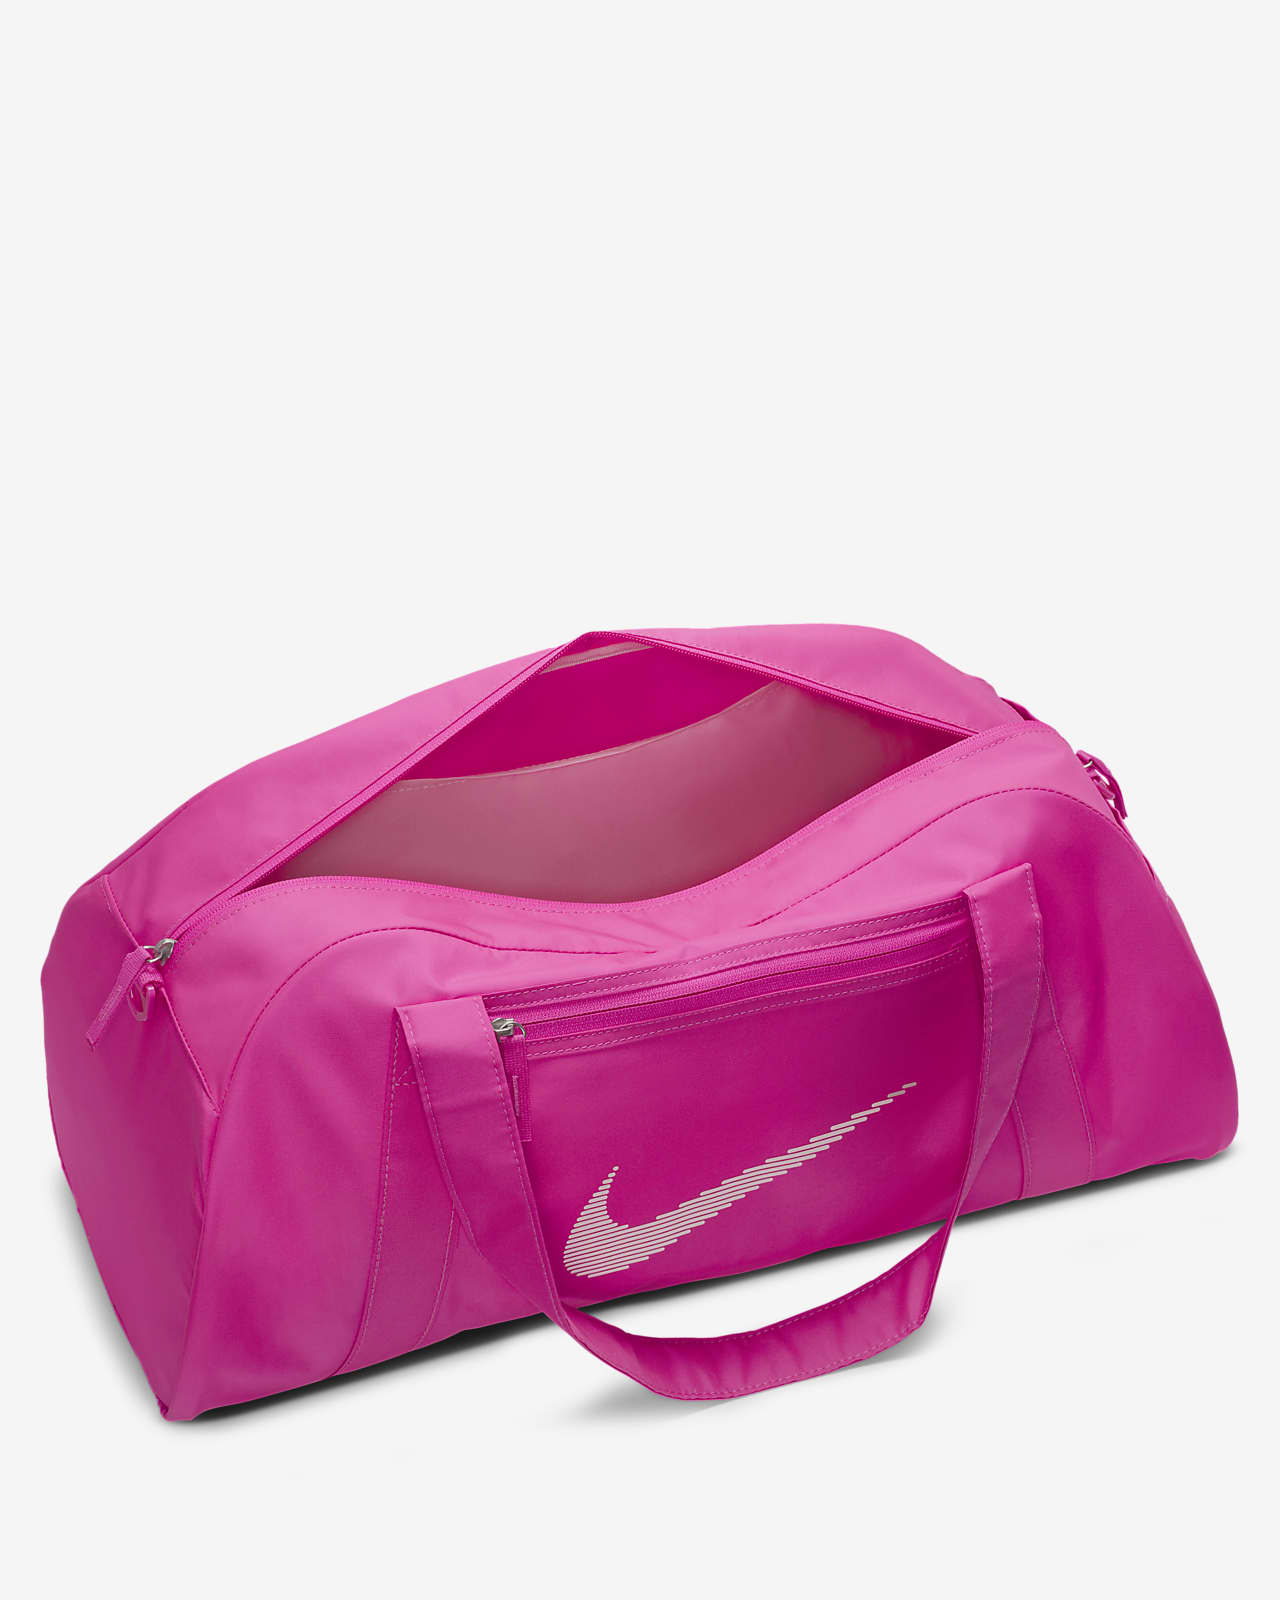 Bolsa de Deporte Gym Club Mujer Rosa